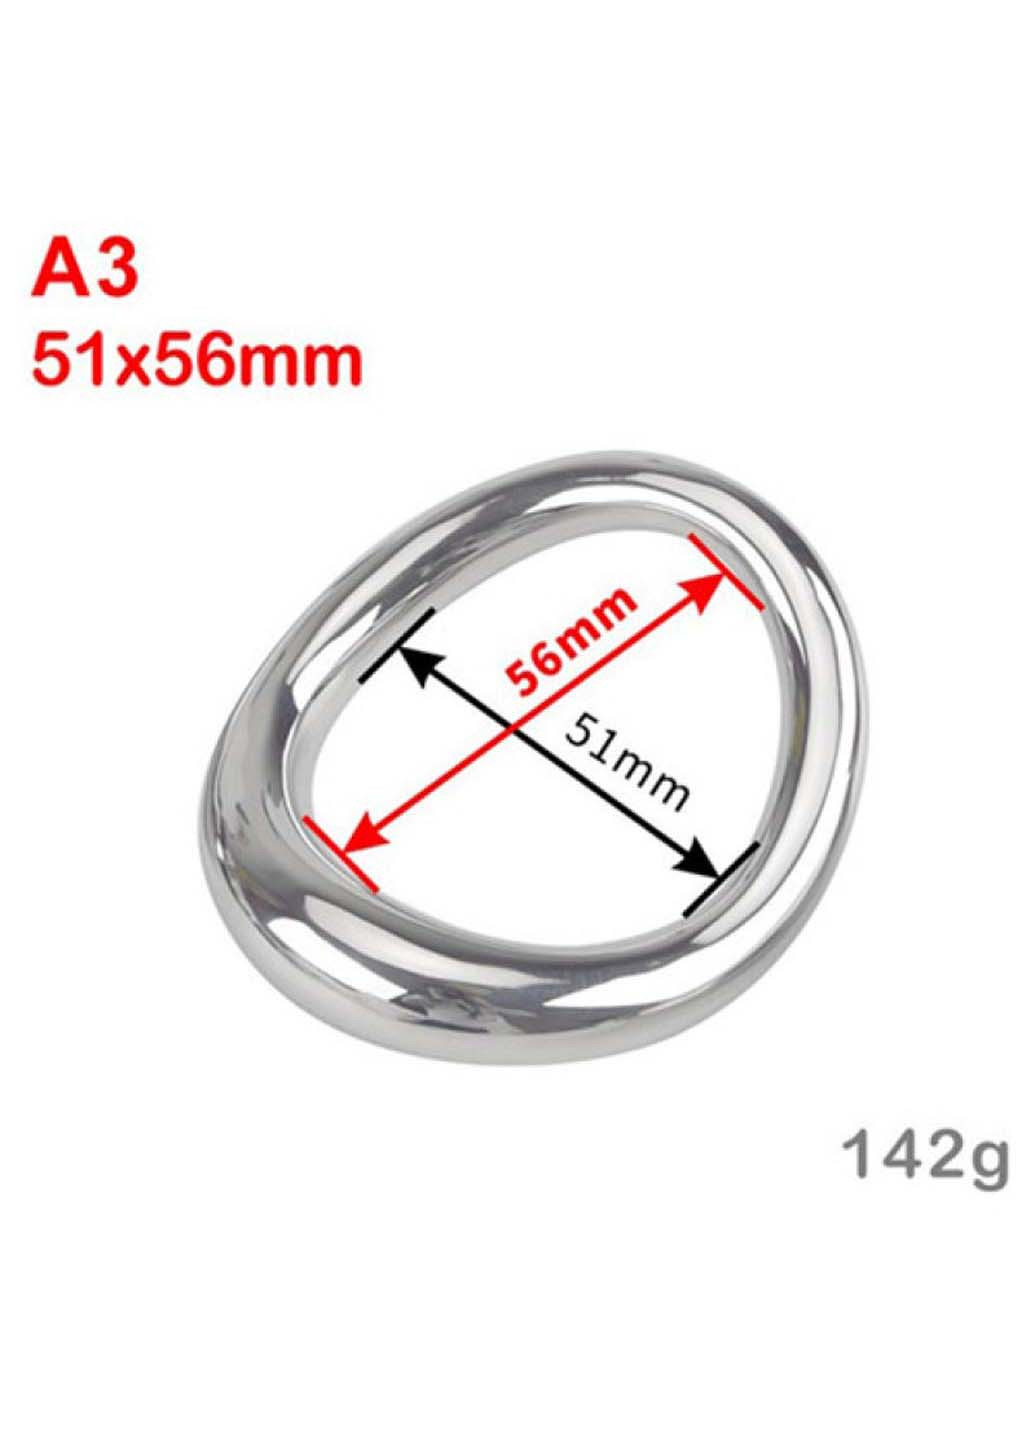 Стальное эрекционное кольцо на головку пениса Curved Penis Ring Large Bdsm4u (277229504)